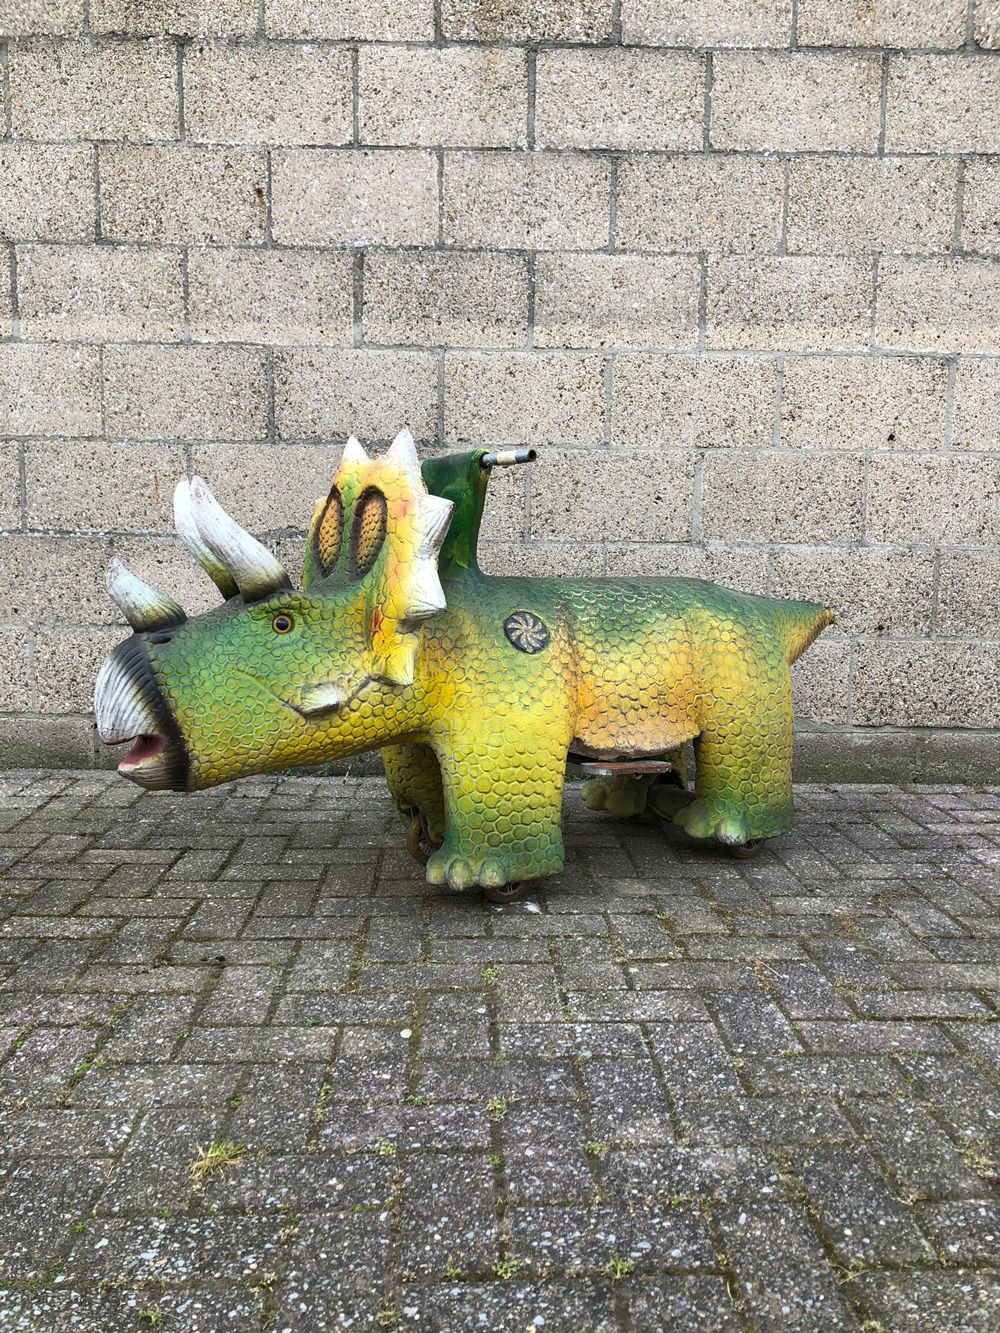 Children's Fairground Coin-Op Triceratops Attraction 投币式儿童游乐场恐龙三角龙的吸引力。这只恐龙有一个投币&hellip;